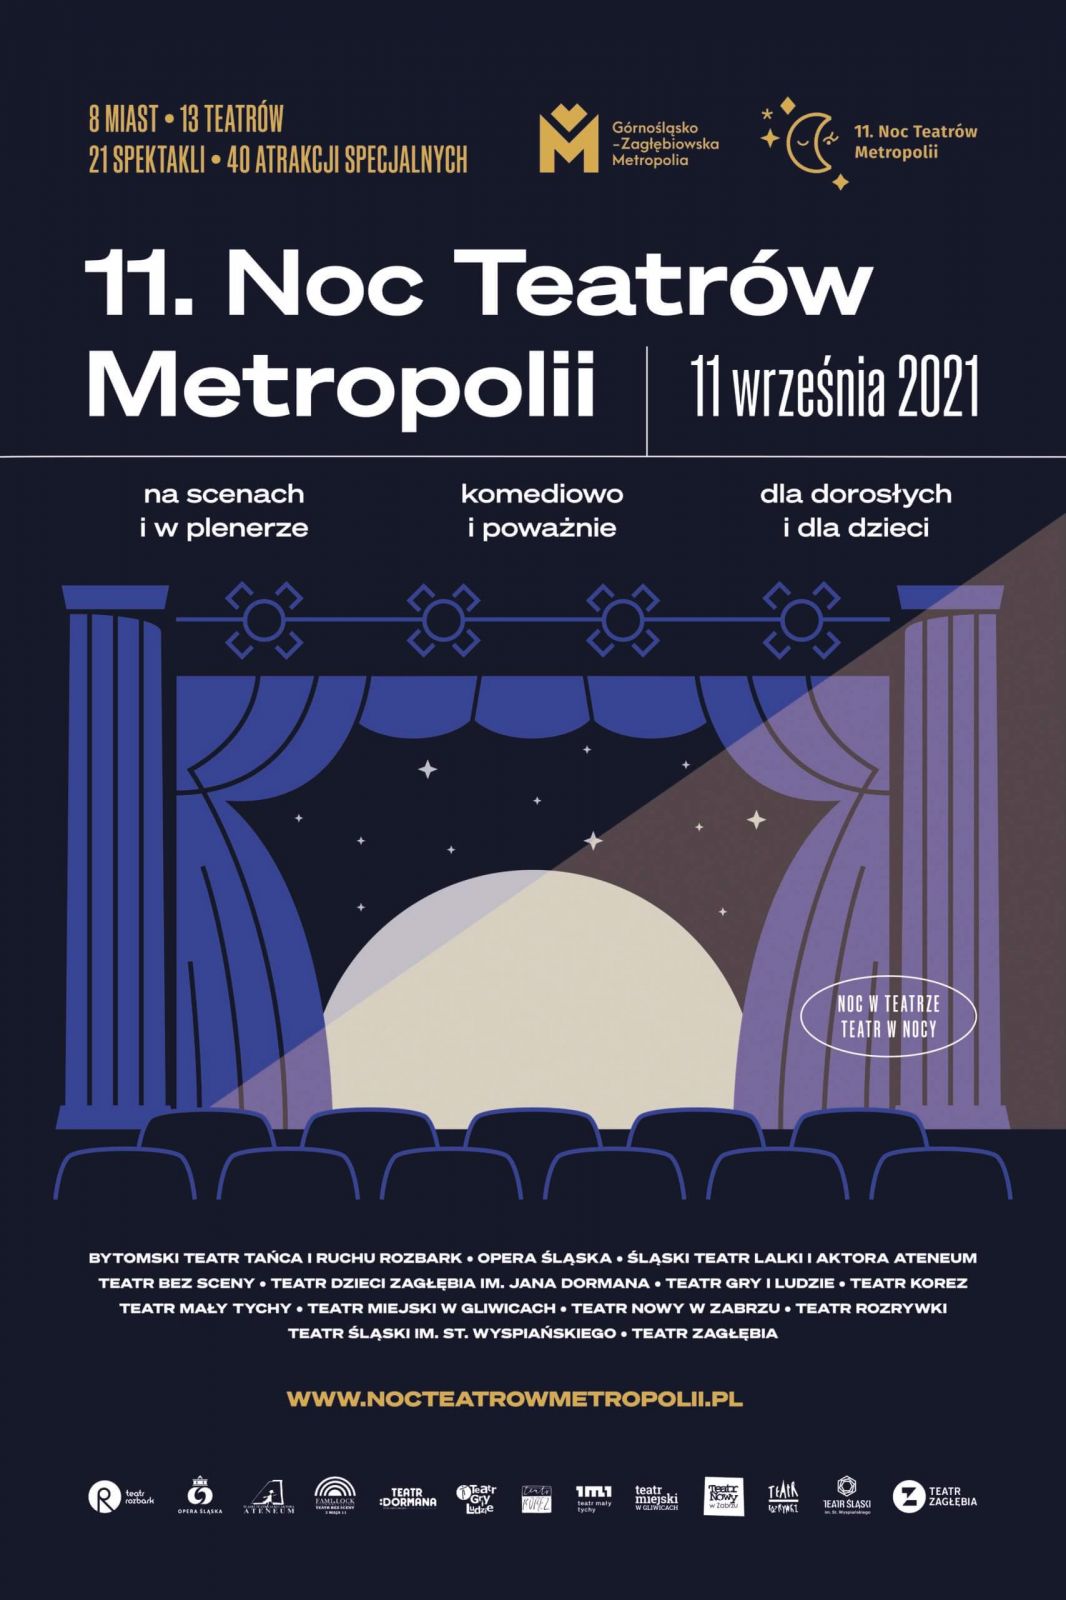 Plakat informacyjny dotyczący 11.Noc Teatrów Metropolii